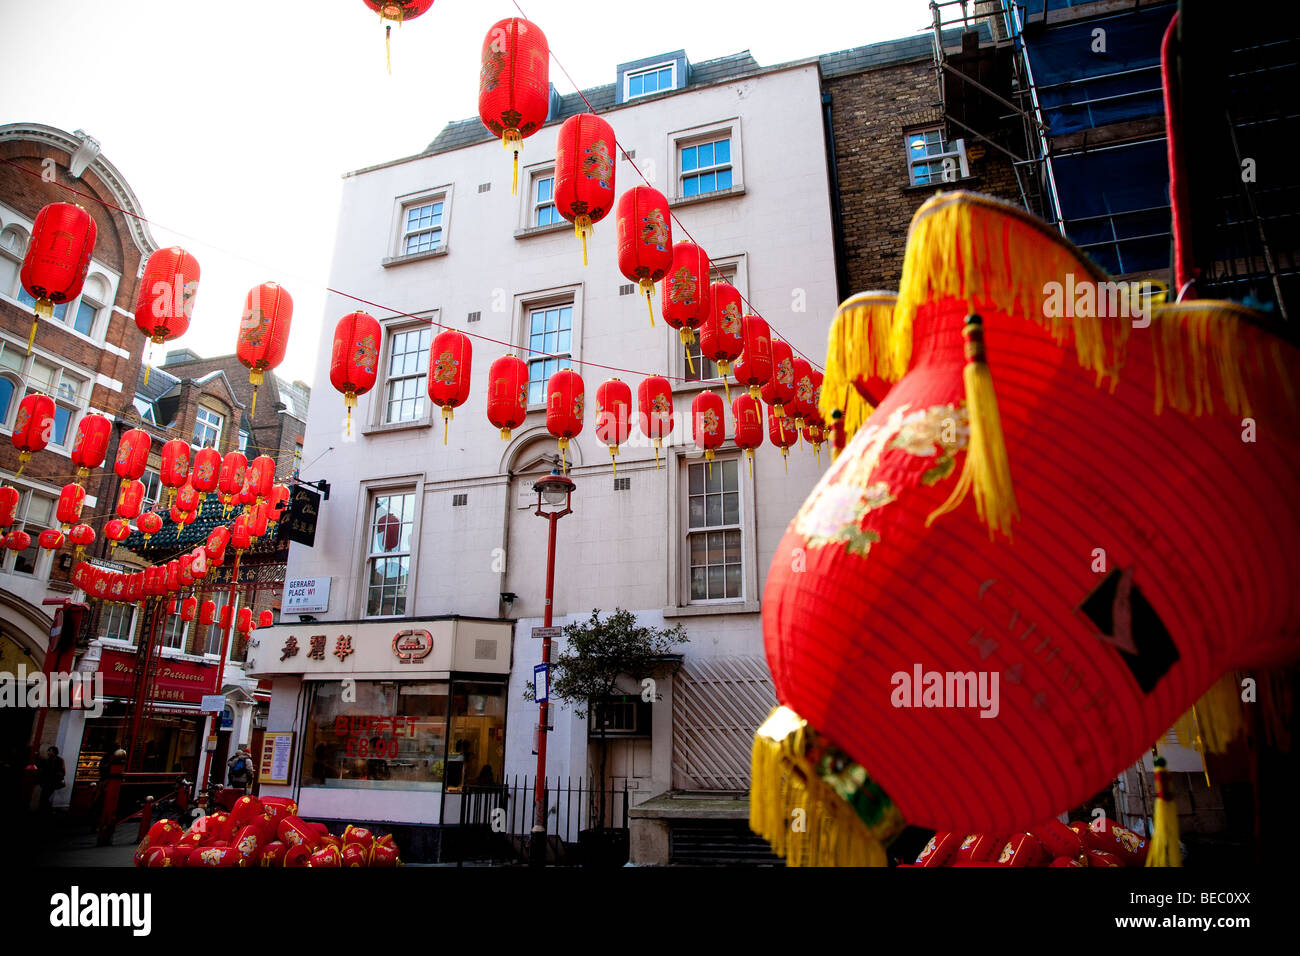 Lanternes rouges pour célébrer le Nouvel An chinois dans Gerrard lieu à Londres, Angleterre, Royaume-Uni Banque D'Images